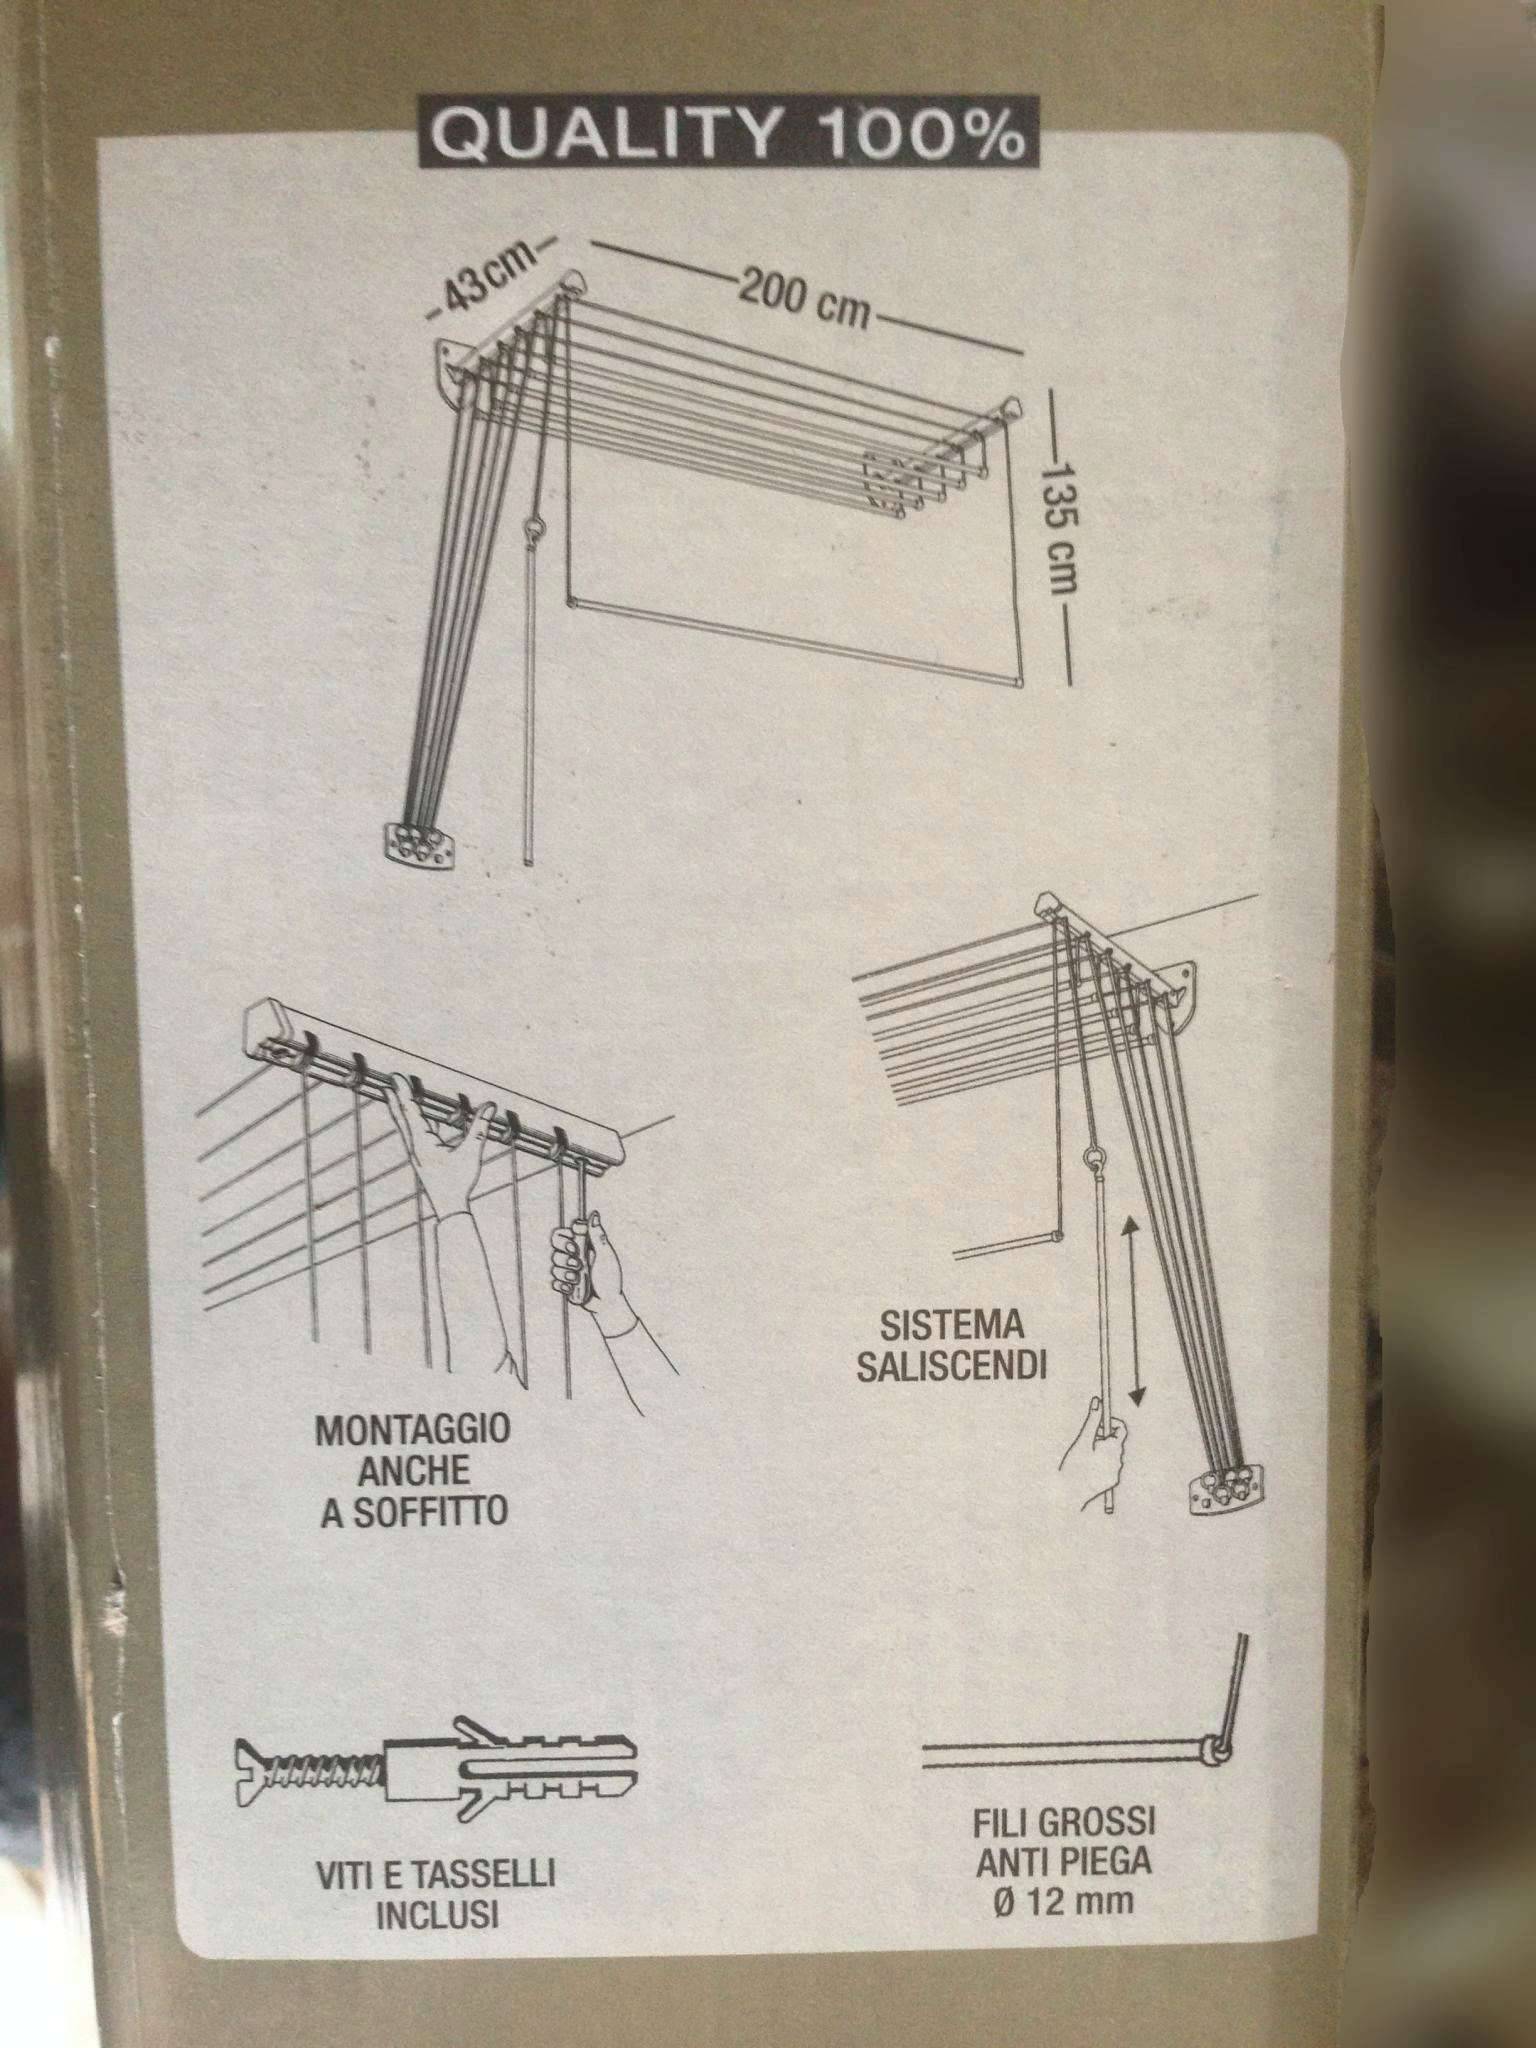 вешалка для белья на балкон потолочная инструкция по установке